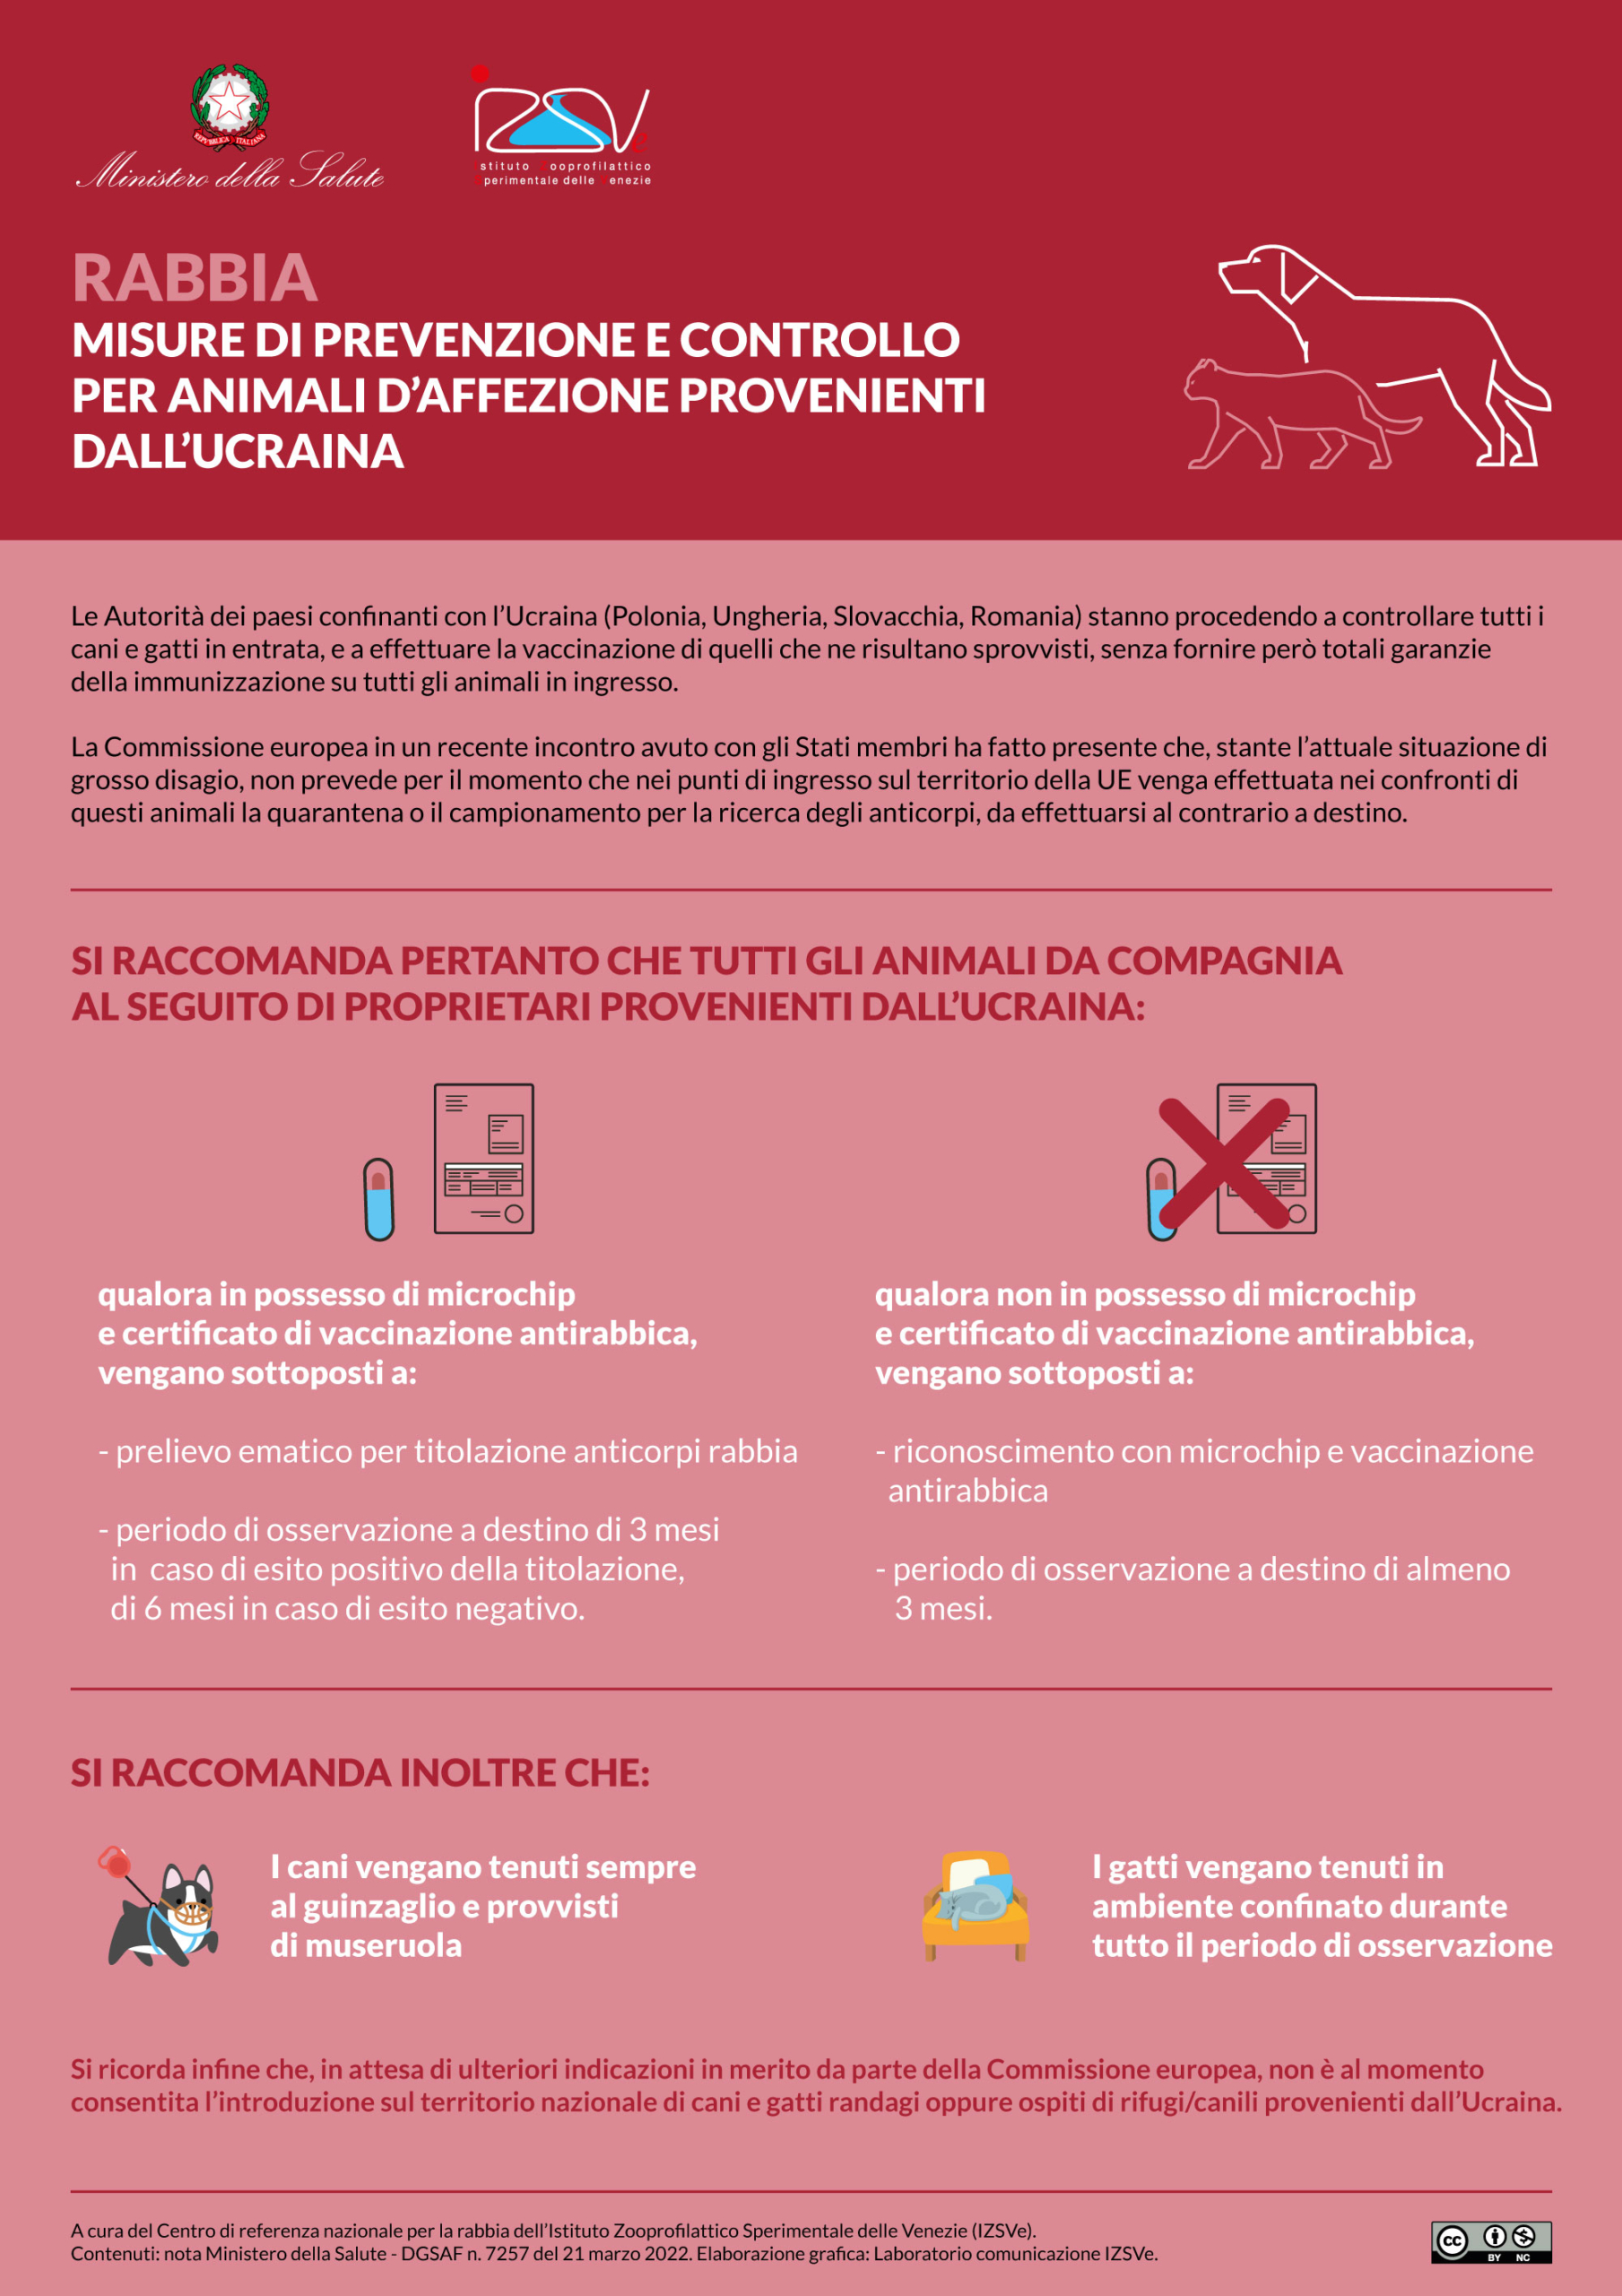 Rabbia. Misure di prevenzione e controllo per animali d'affezione provenienti dall'Ucraina